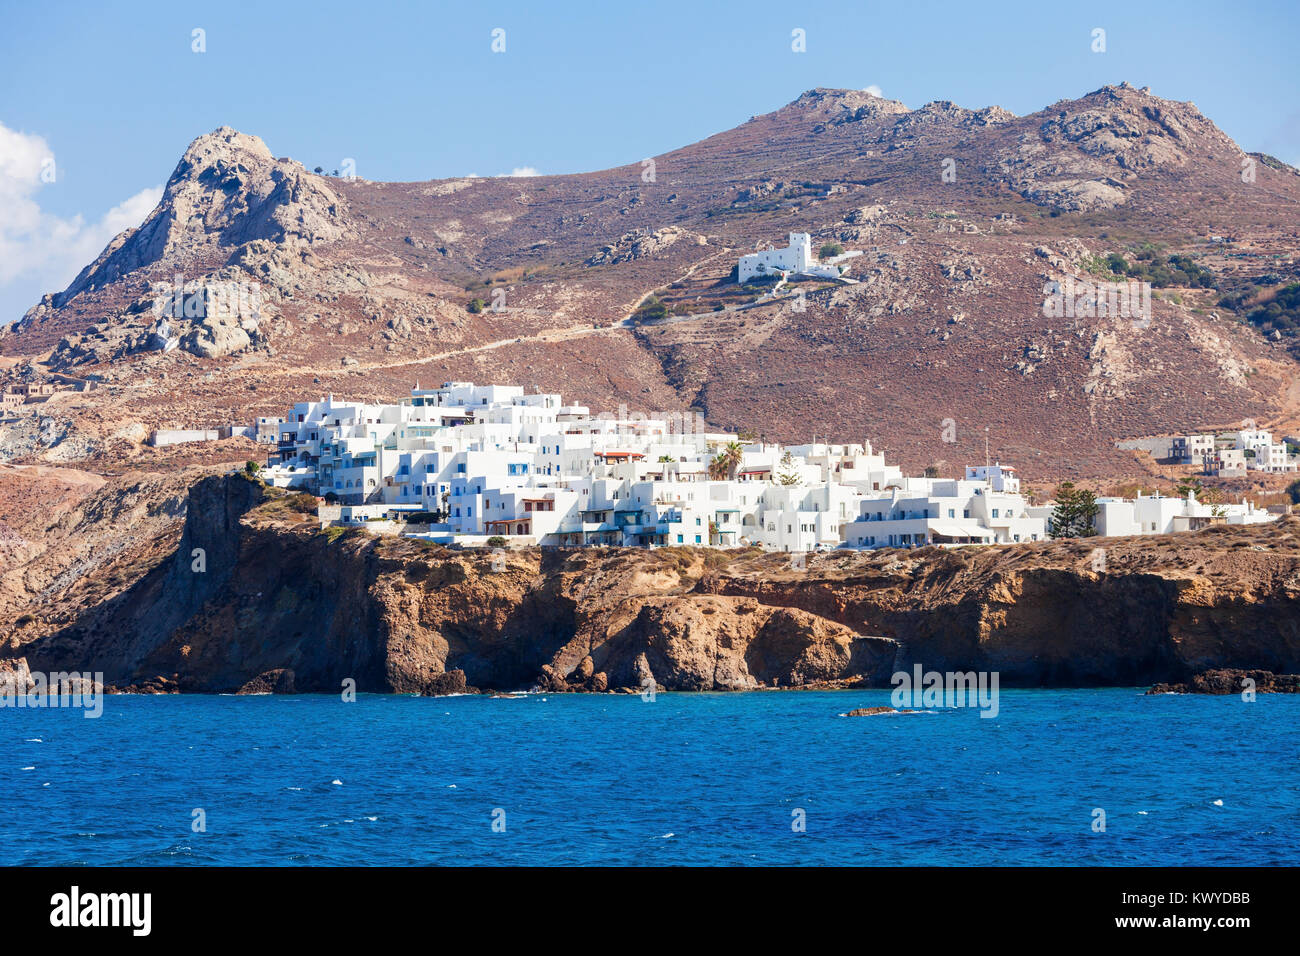 Insel Naxos Antenne Panoramablick. Naxos ist die größte der Kykladen Inseln in der Ägäis, Griechenland Stockfoto